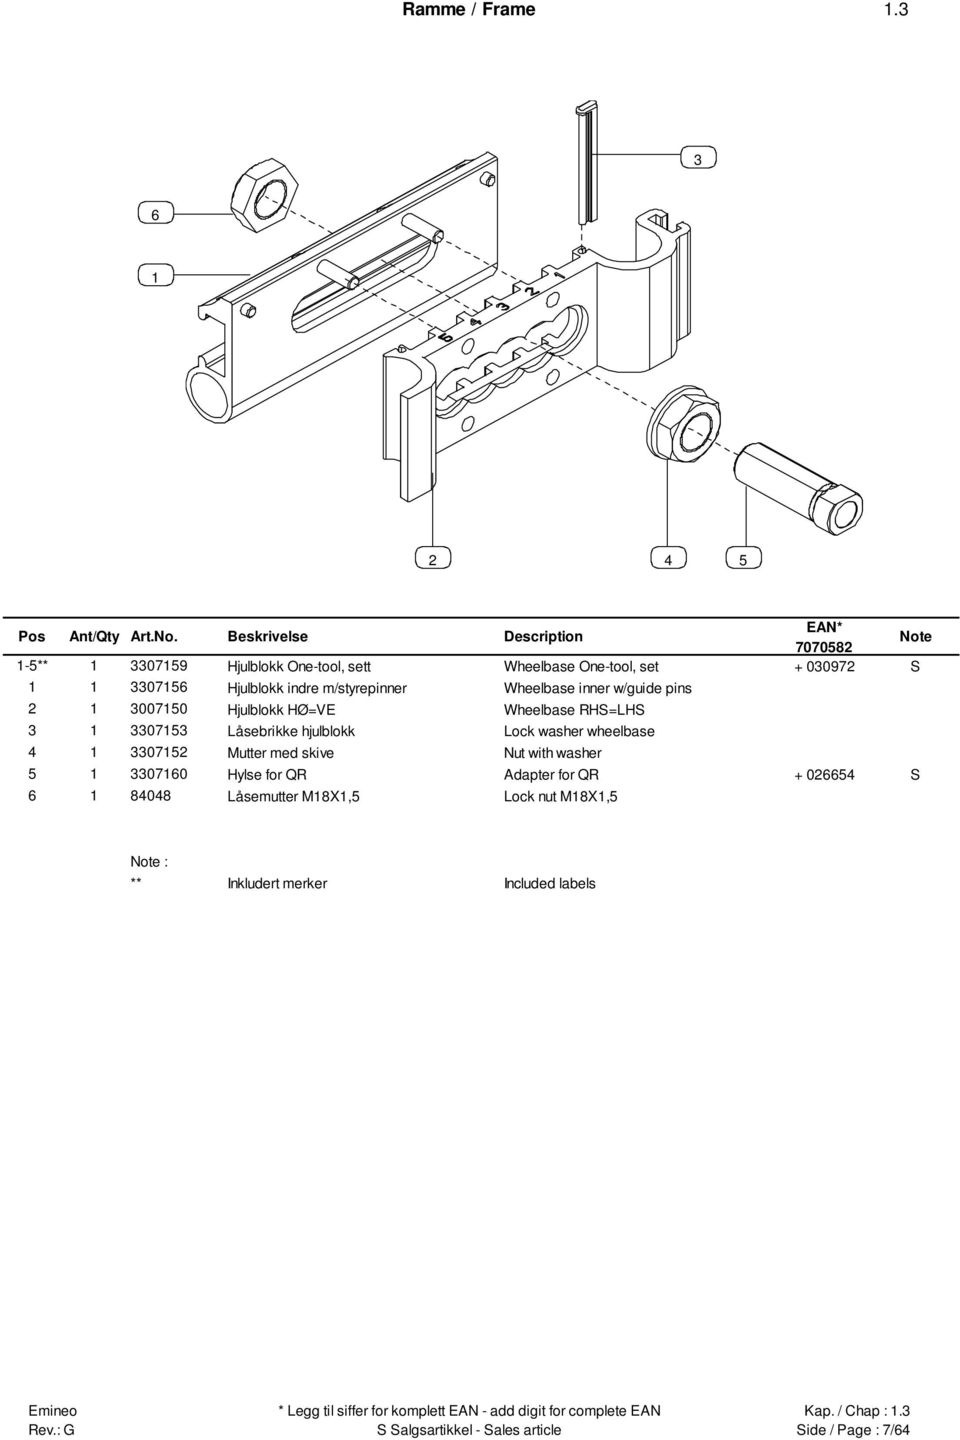 Wheelbase inner w/guide pins 00750 Hjulblokk HØ=VE Wheelbase RHS=LHS 075 Låsebrikke hjulblokk Lock washer